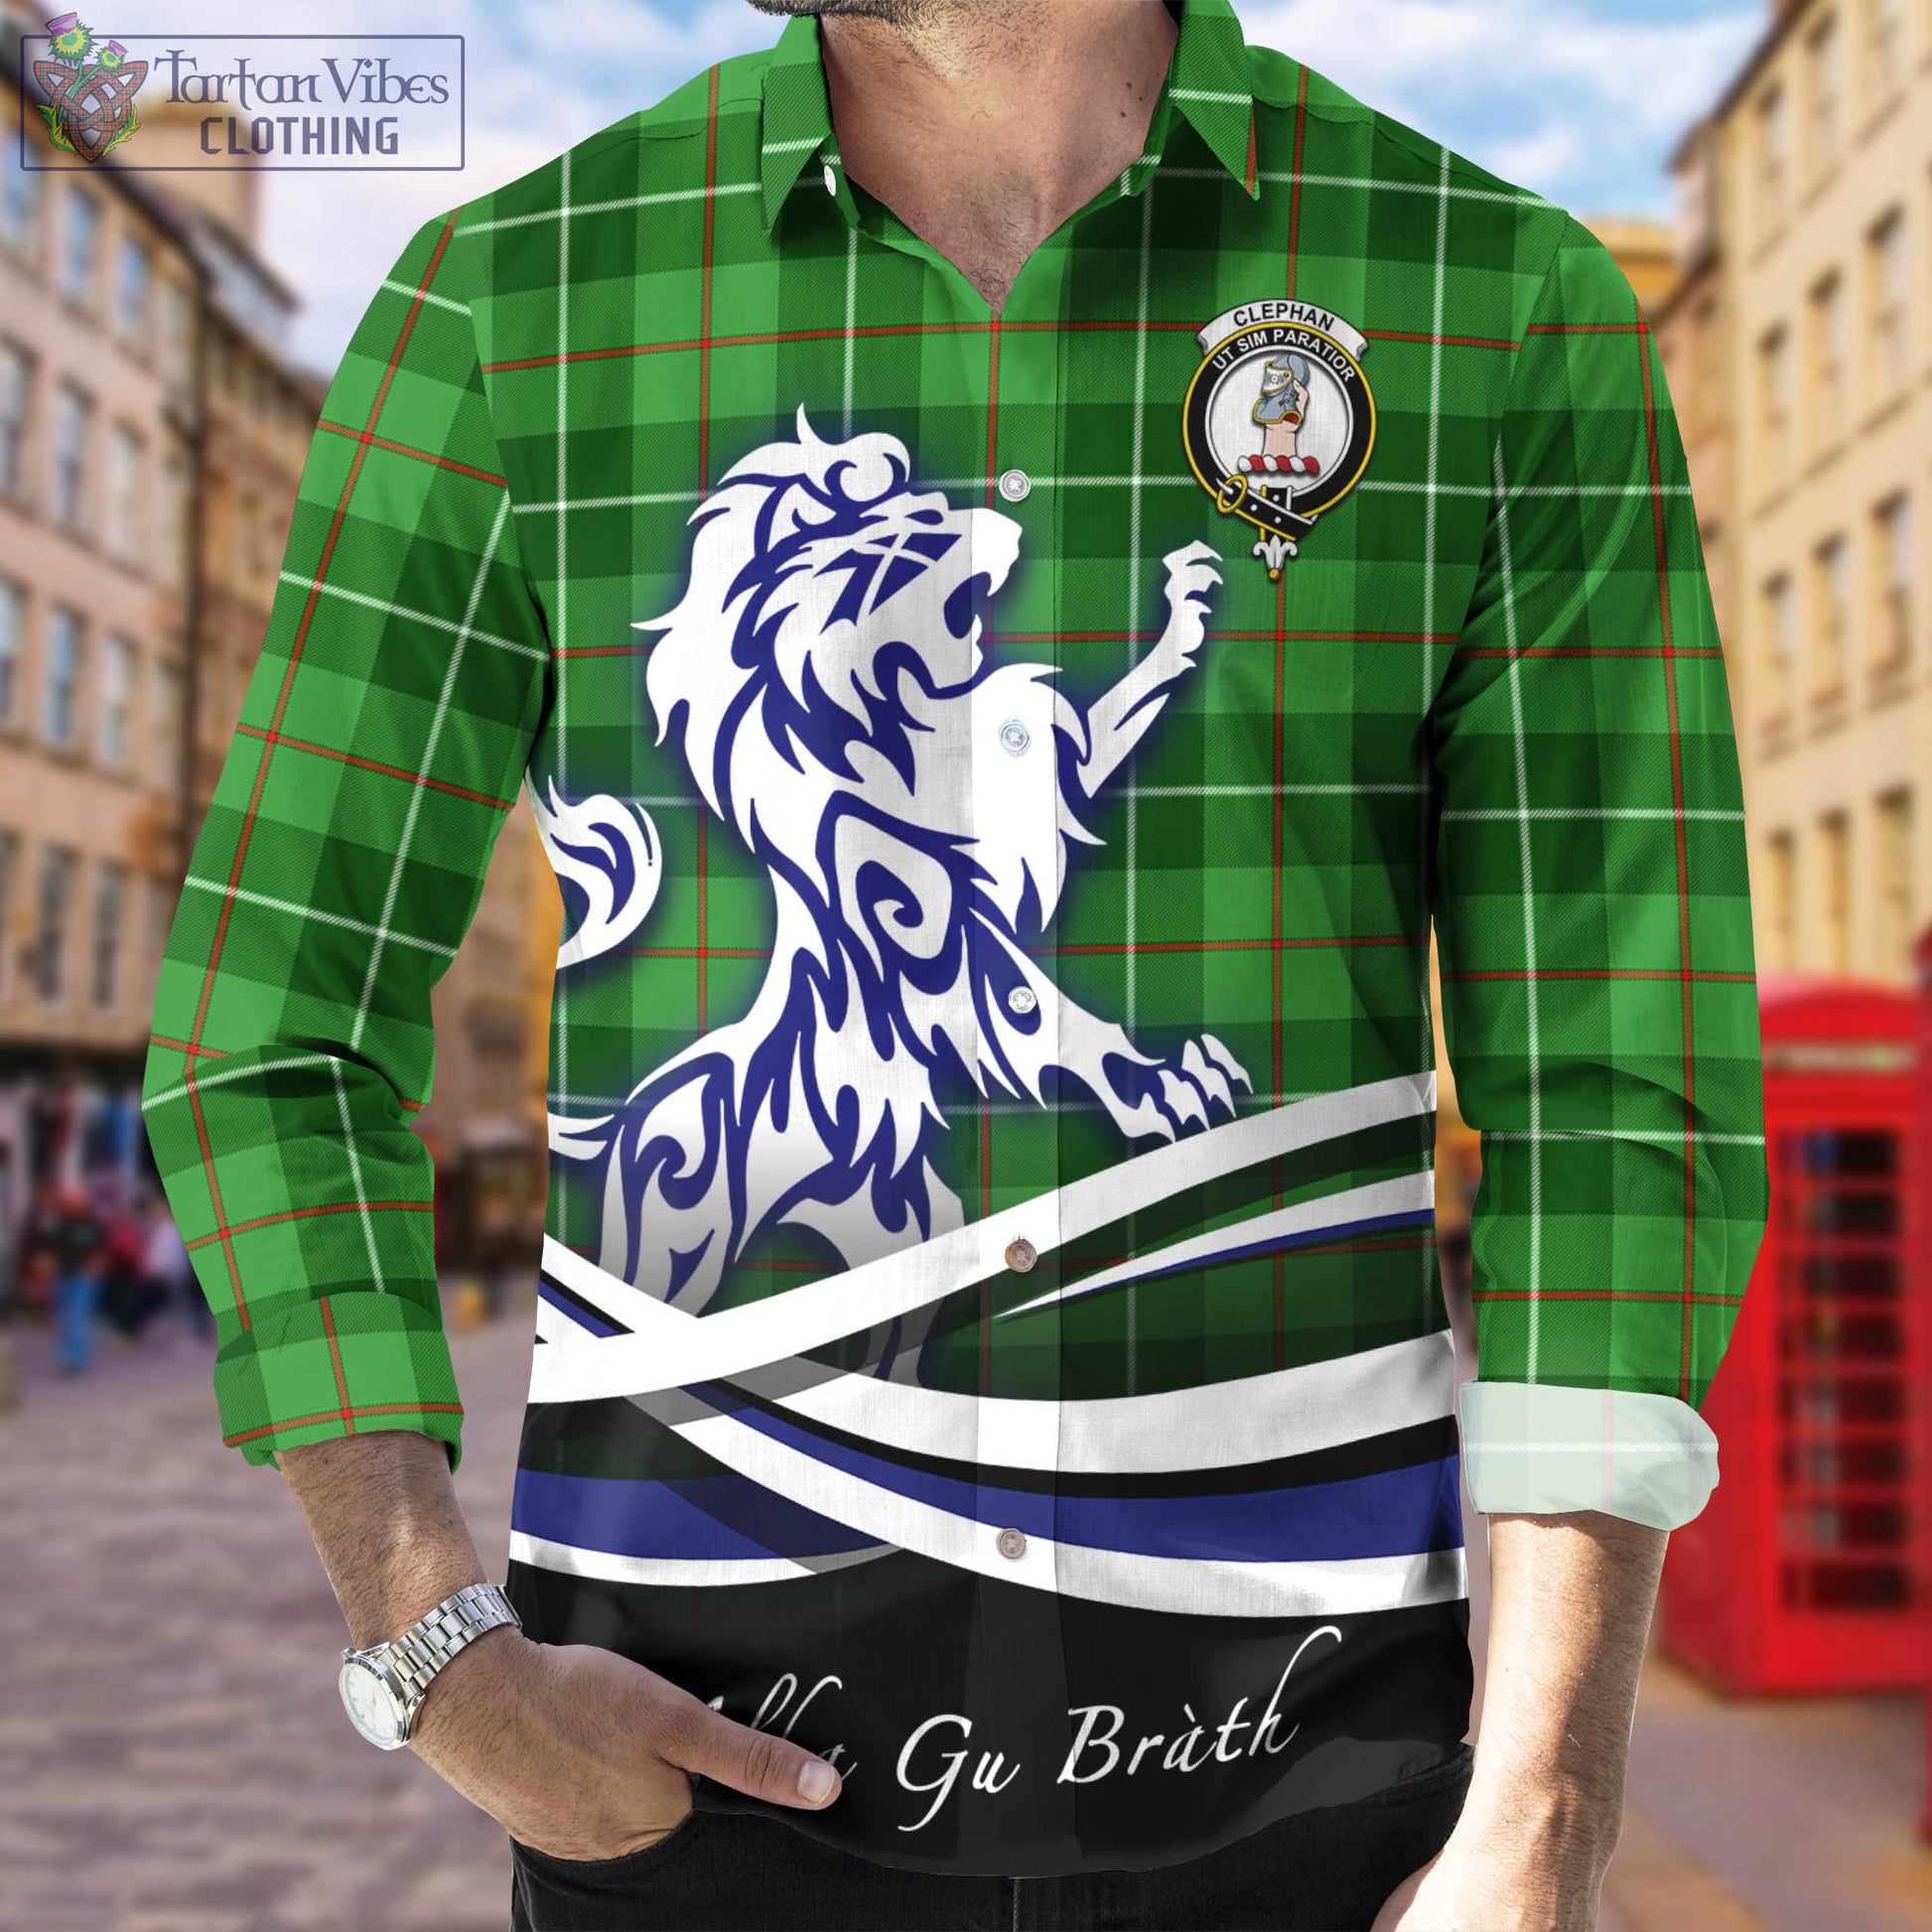 clephan-tartan-long-sleeve-button-up-shirt-with-alba-gu-brath-regal-lion-emblem